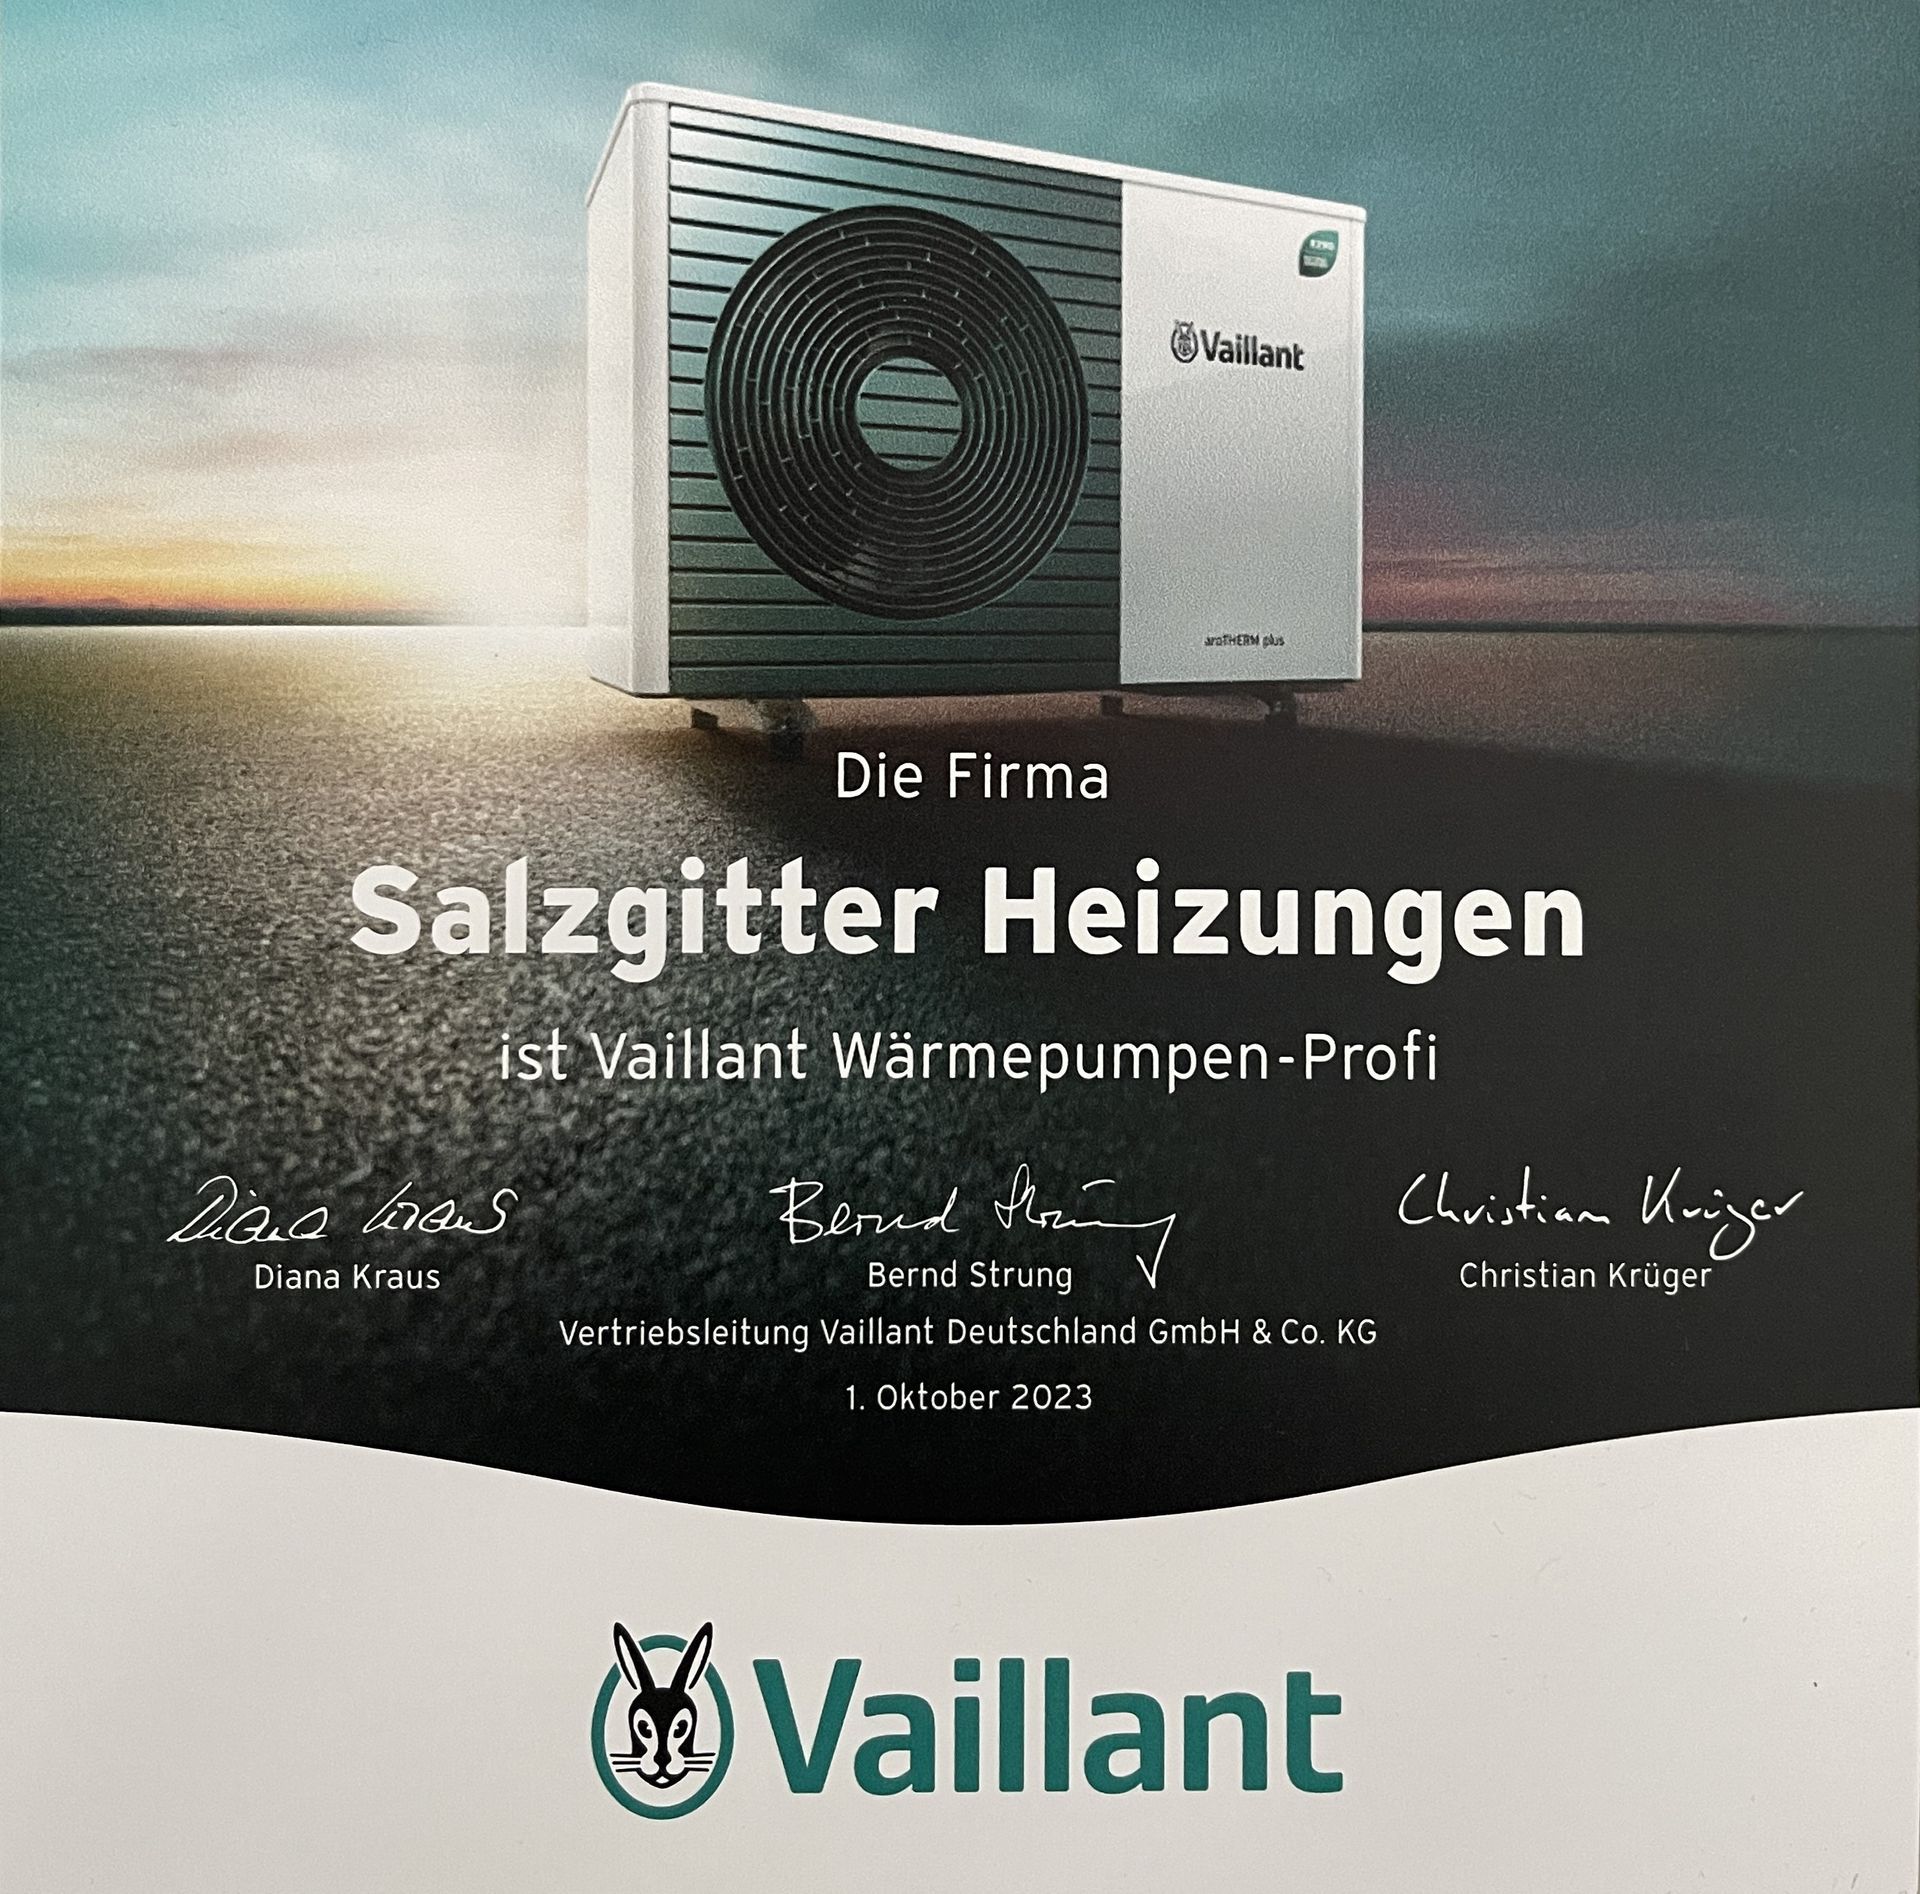 Salzgitter-Heizungen - Vaillant Wärmepumpen-Profi